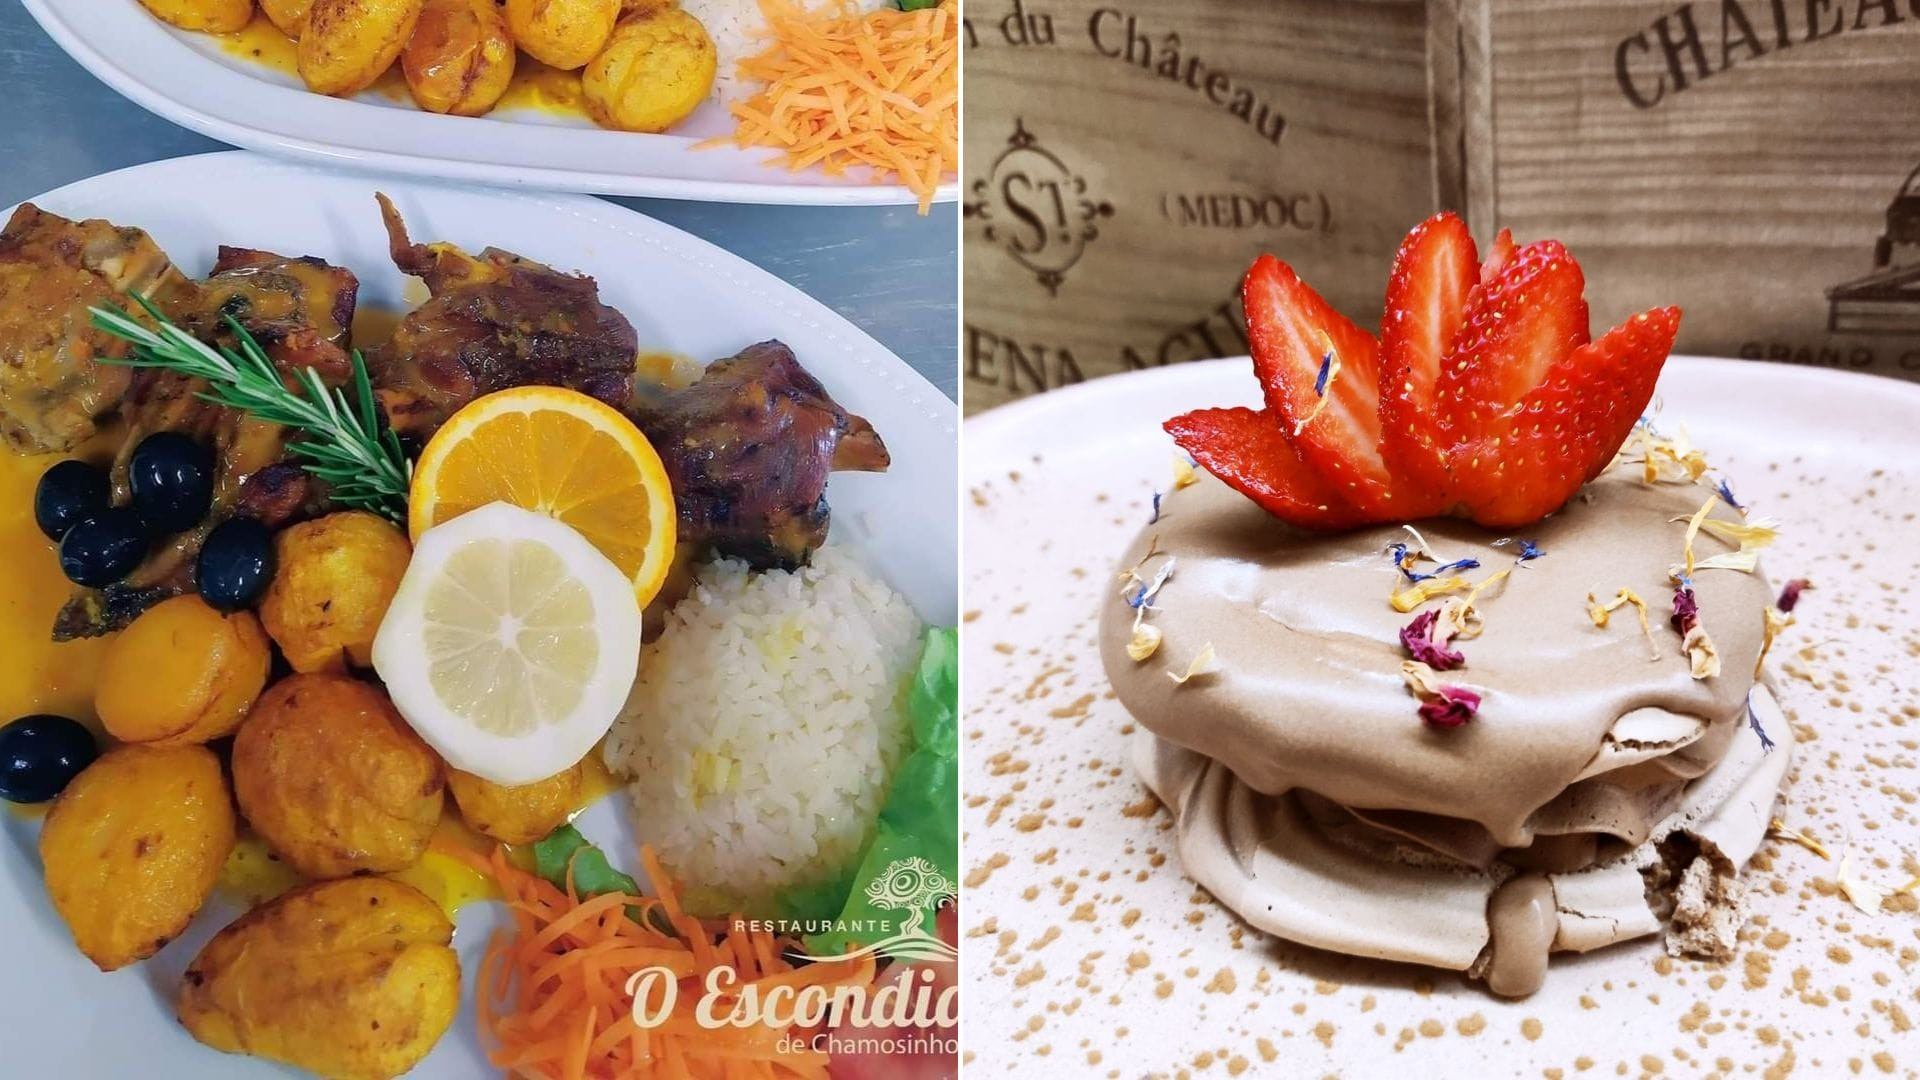 Algunos de los platos que puedes probar en O Escondidinho. Foto: Facebook del restaurante